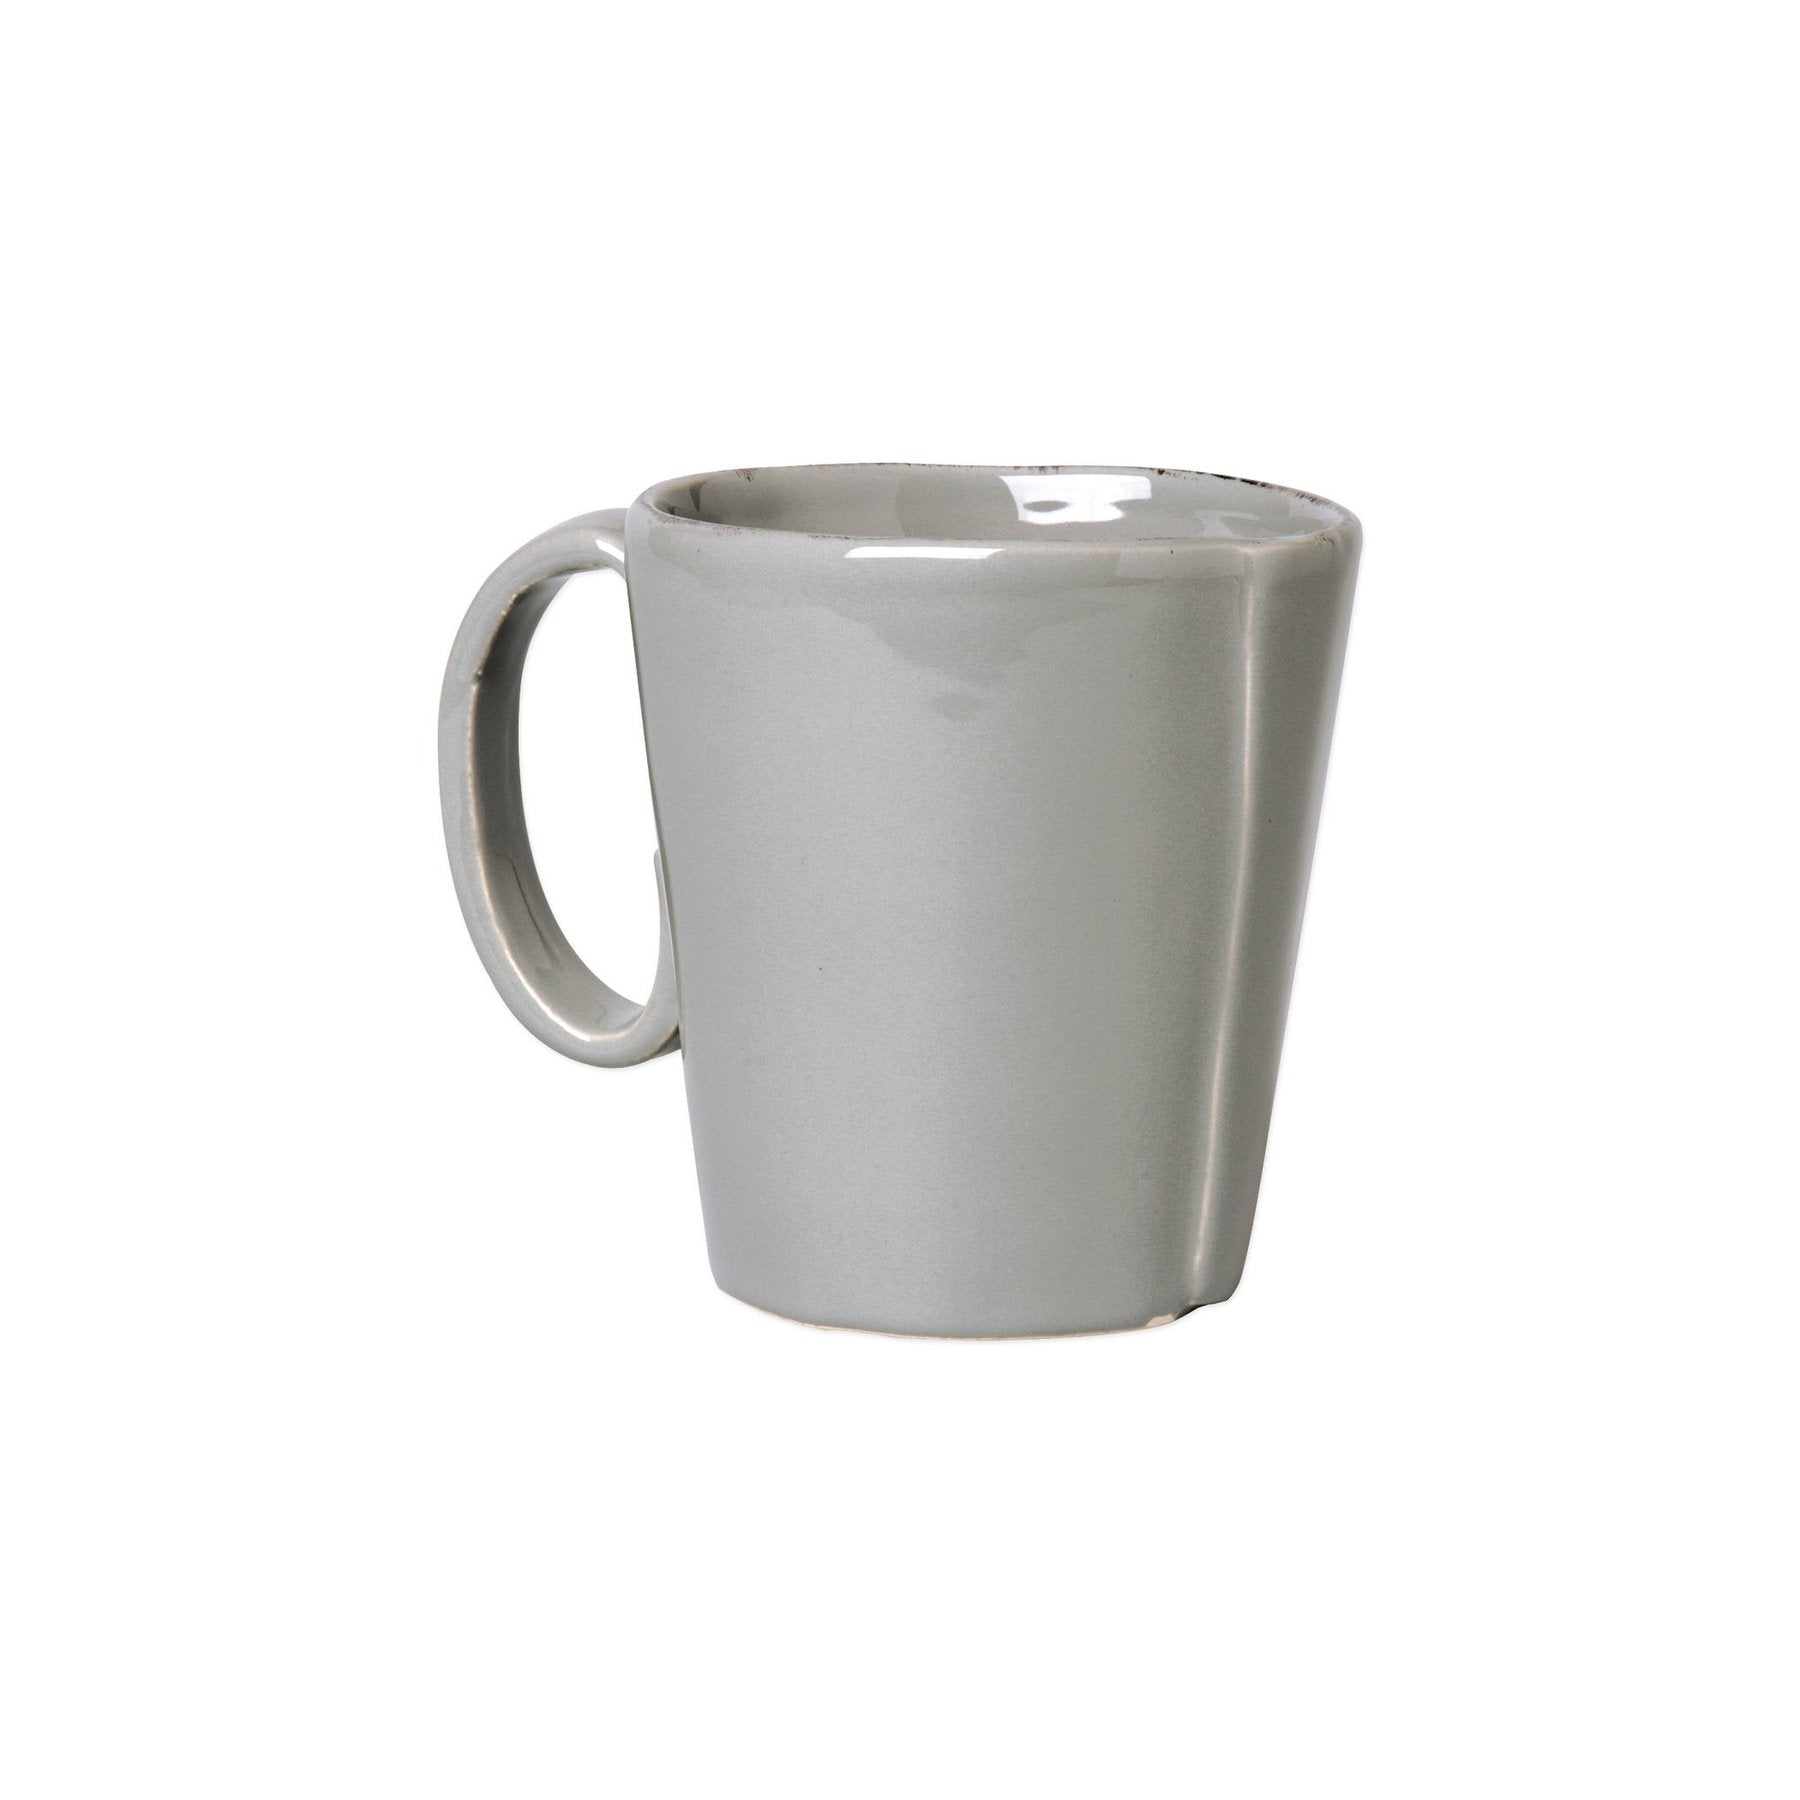 grey mug on white background.